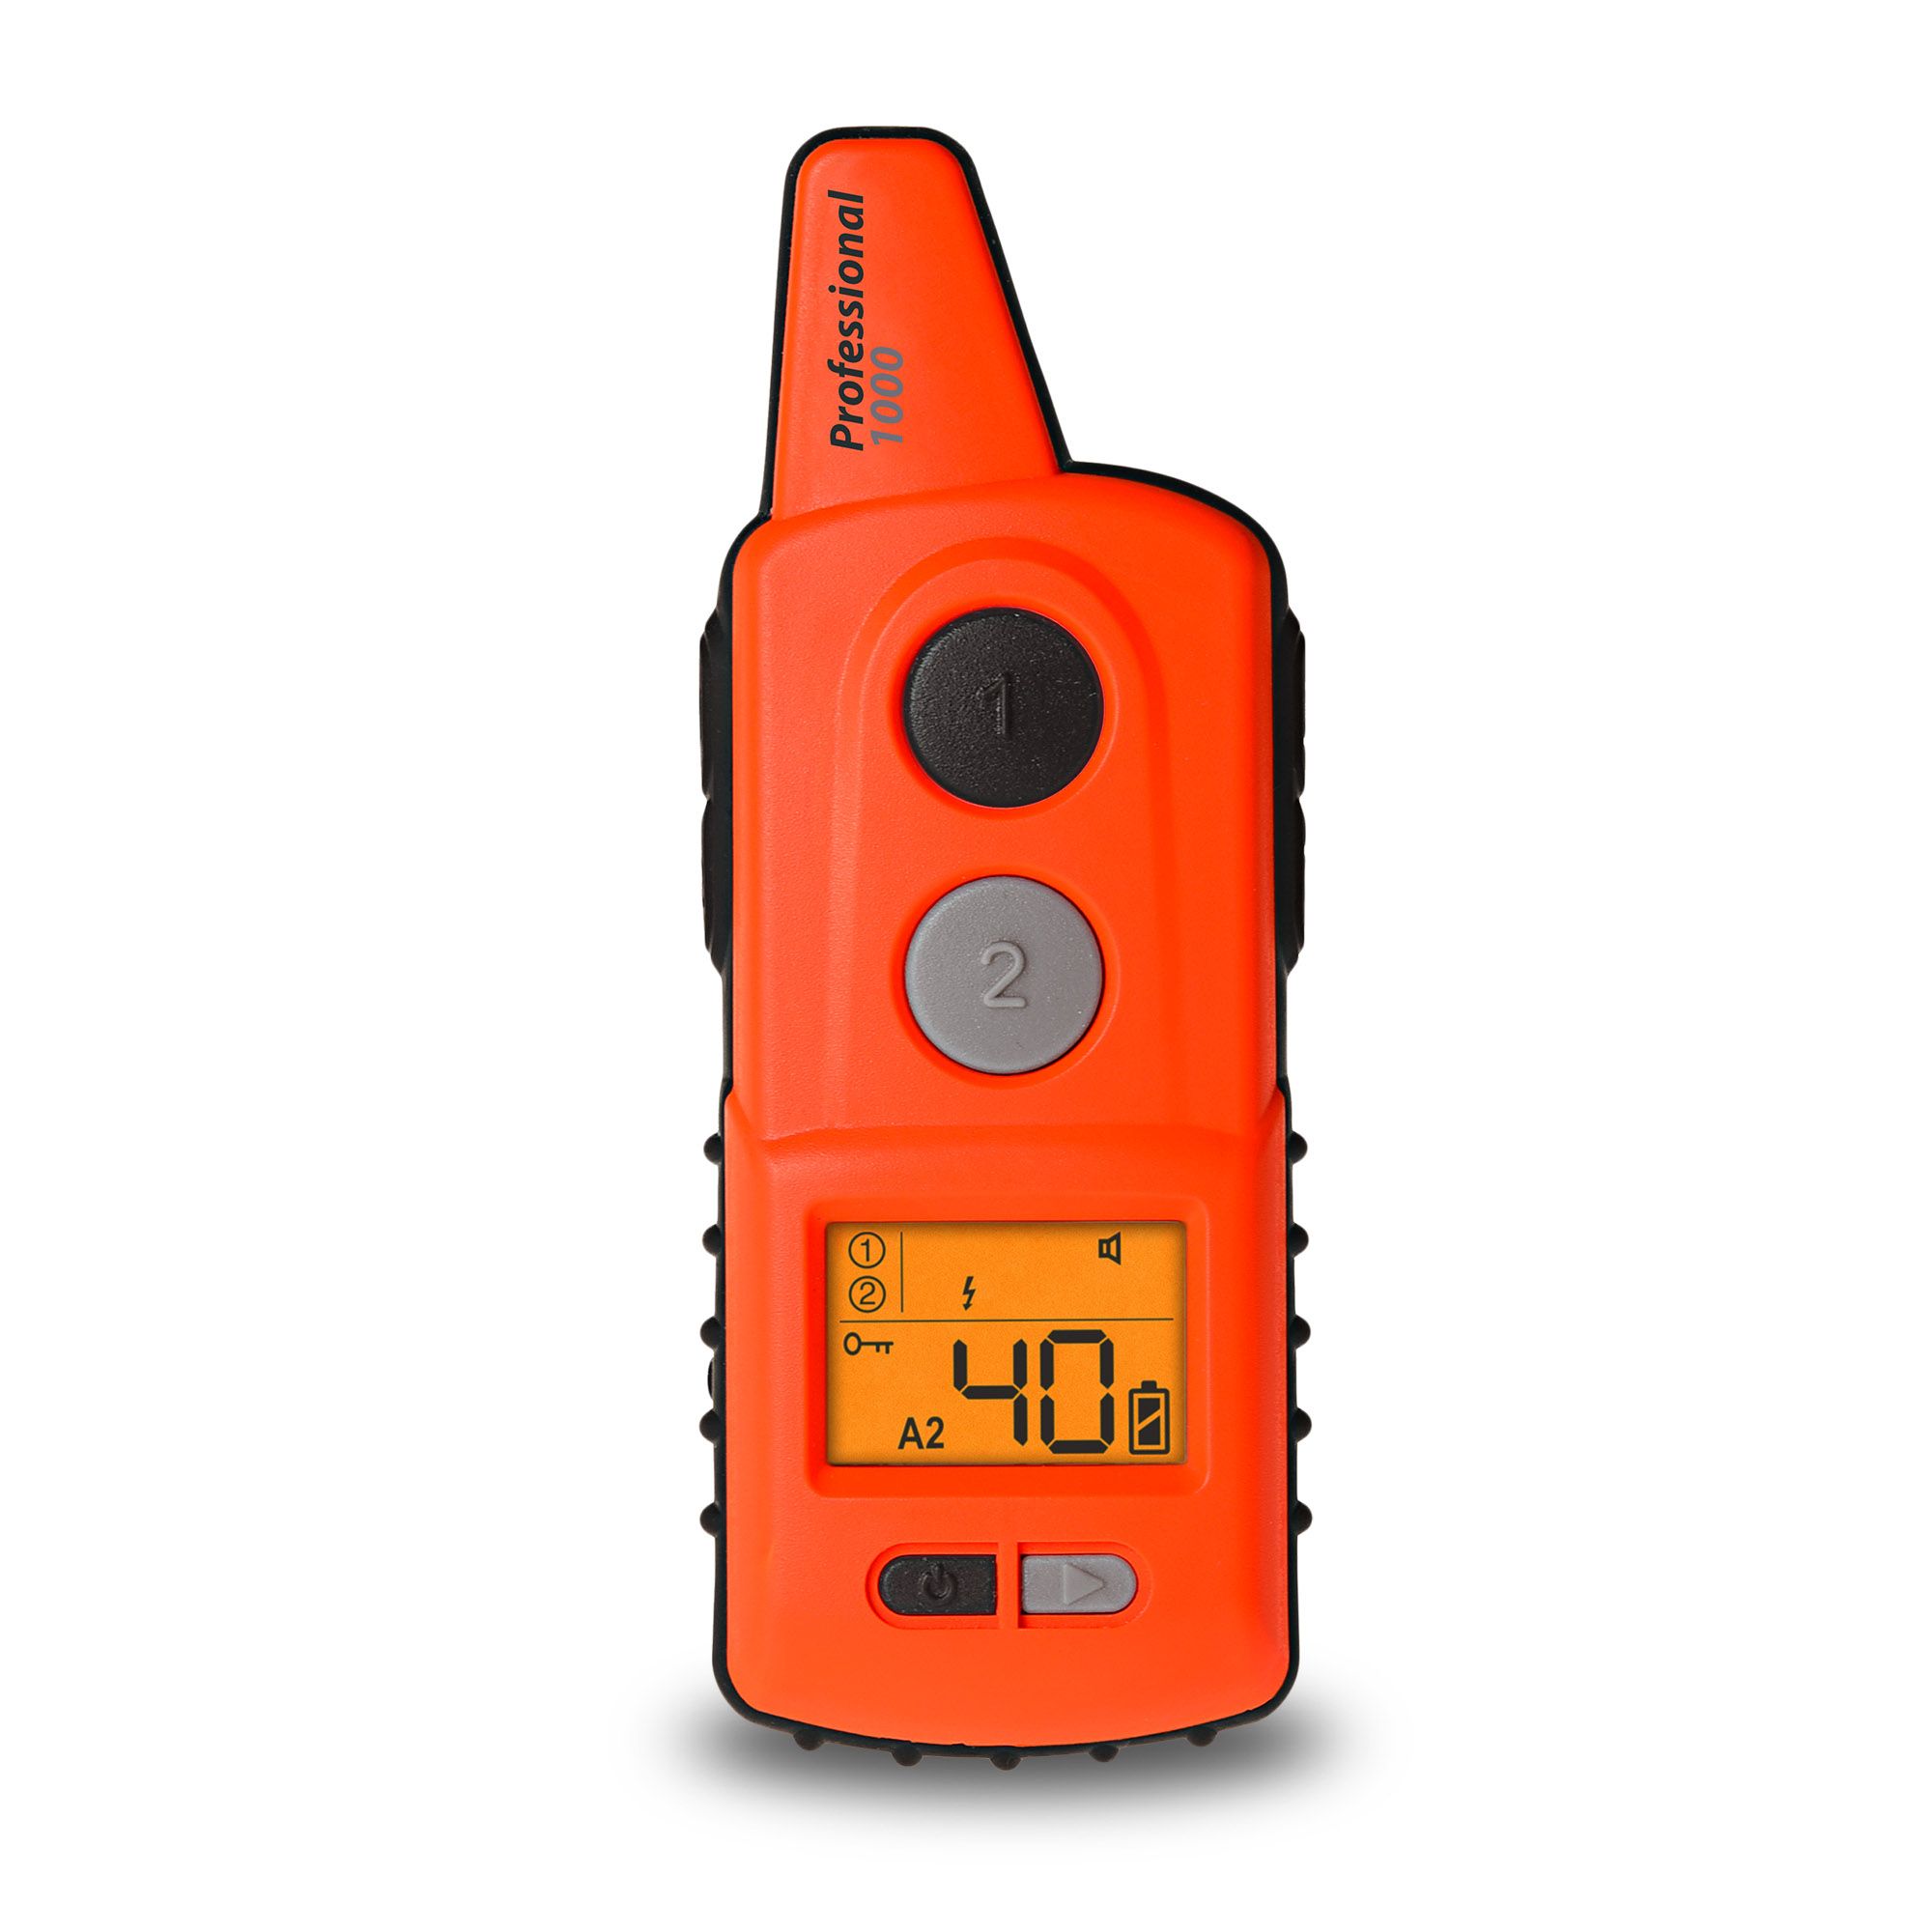 Vysílač k elektronickému obojku d-control professional 1000 - Oranžová